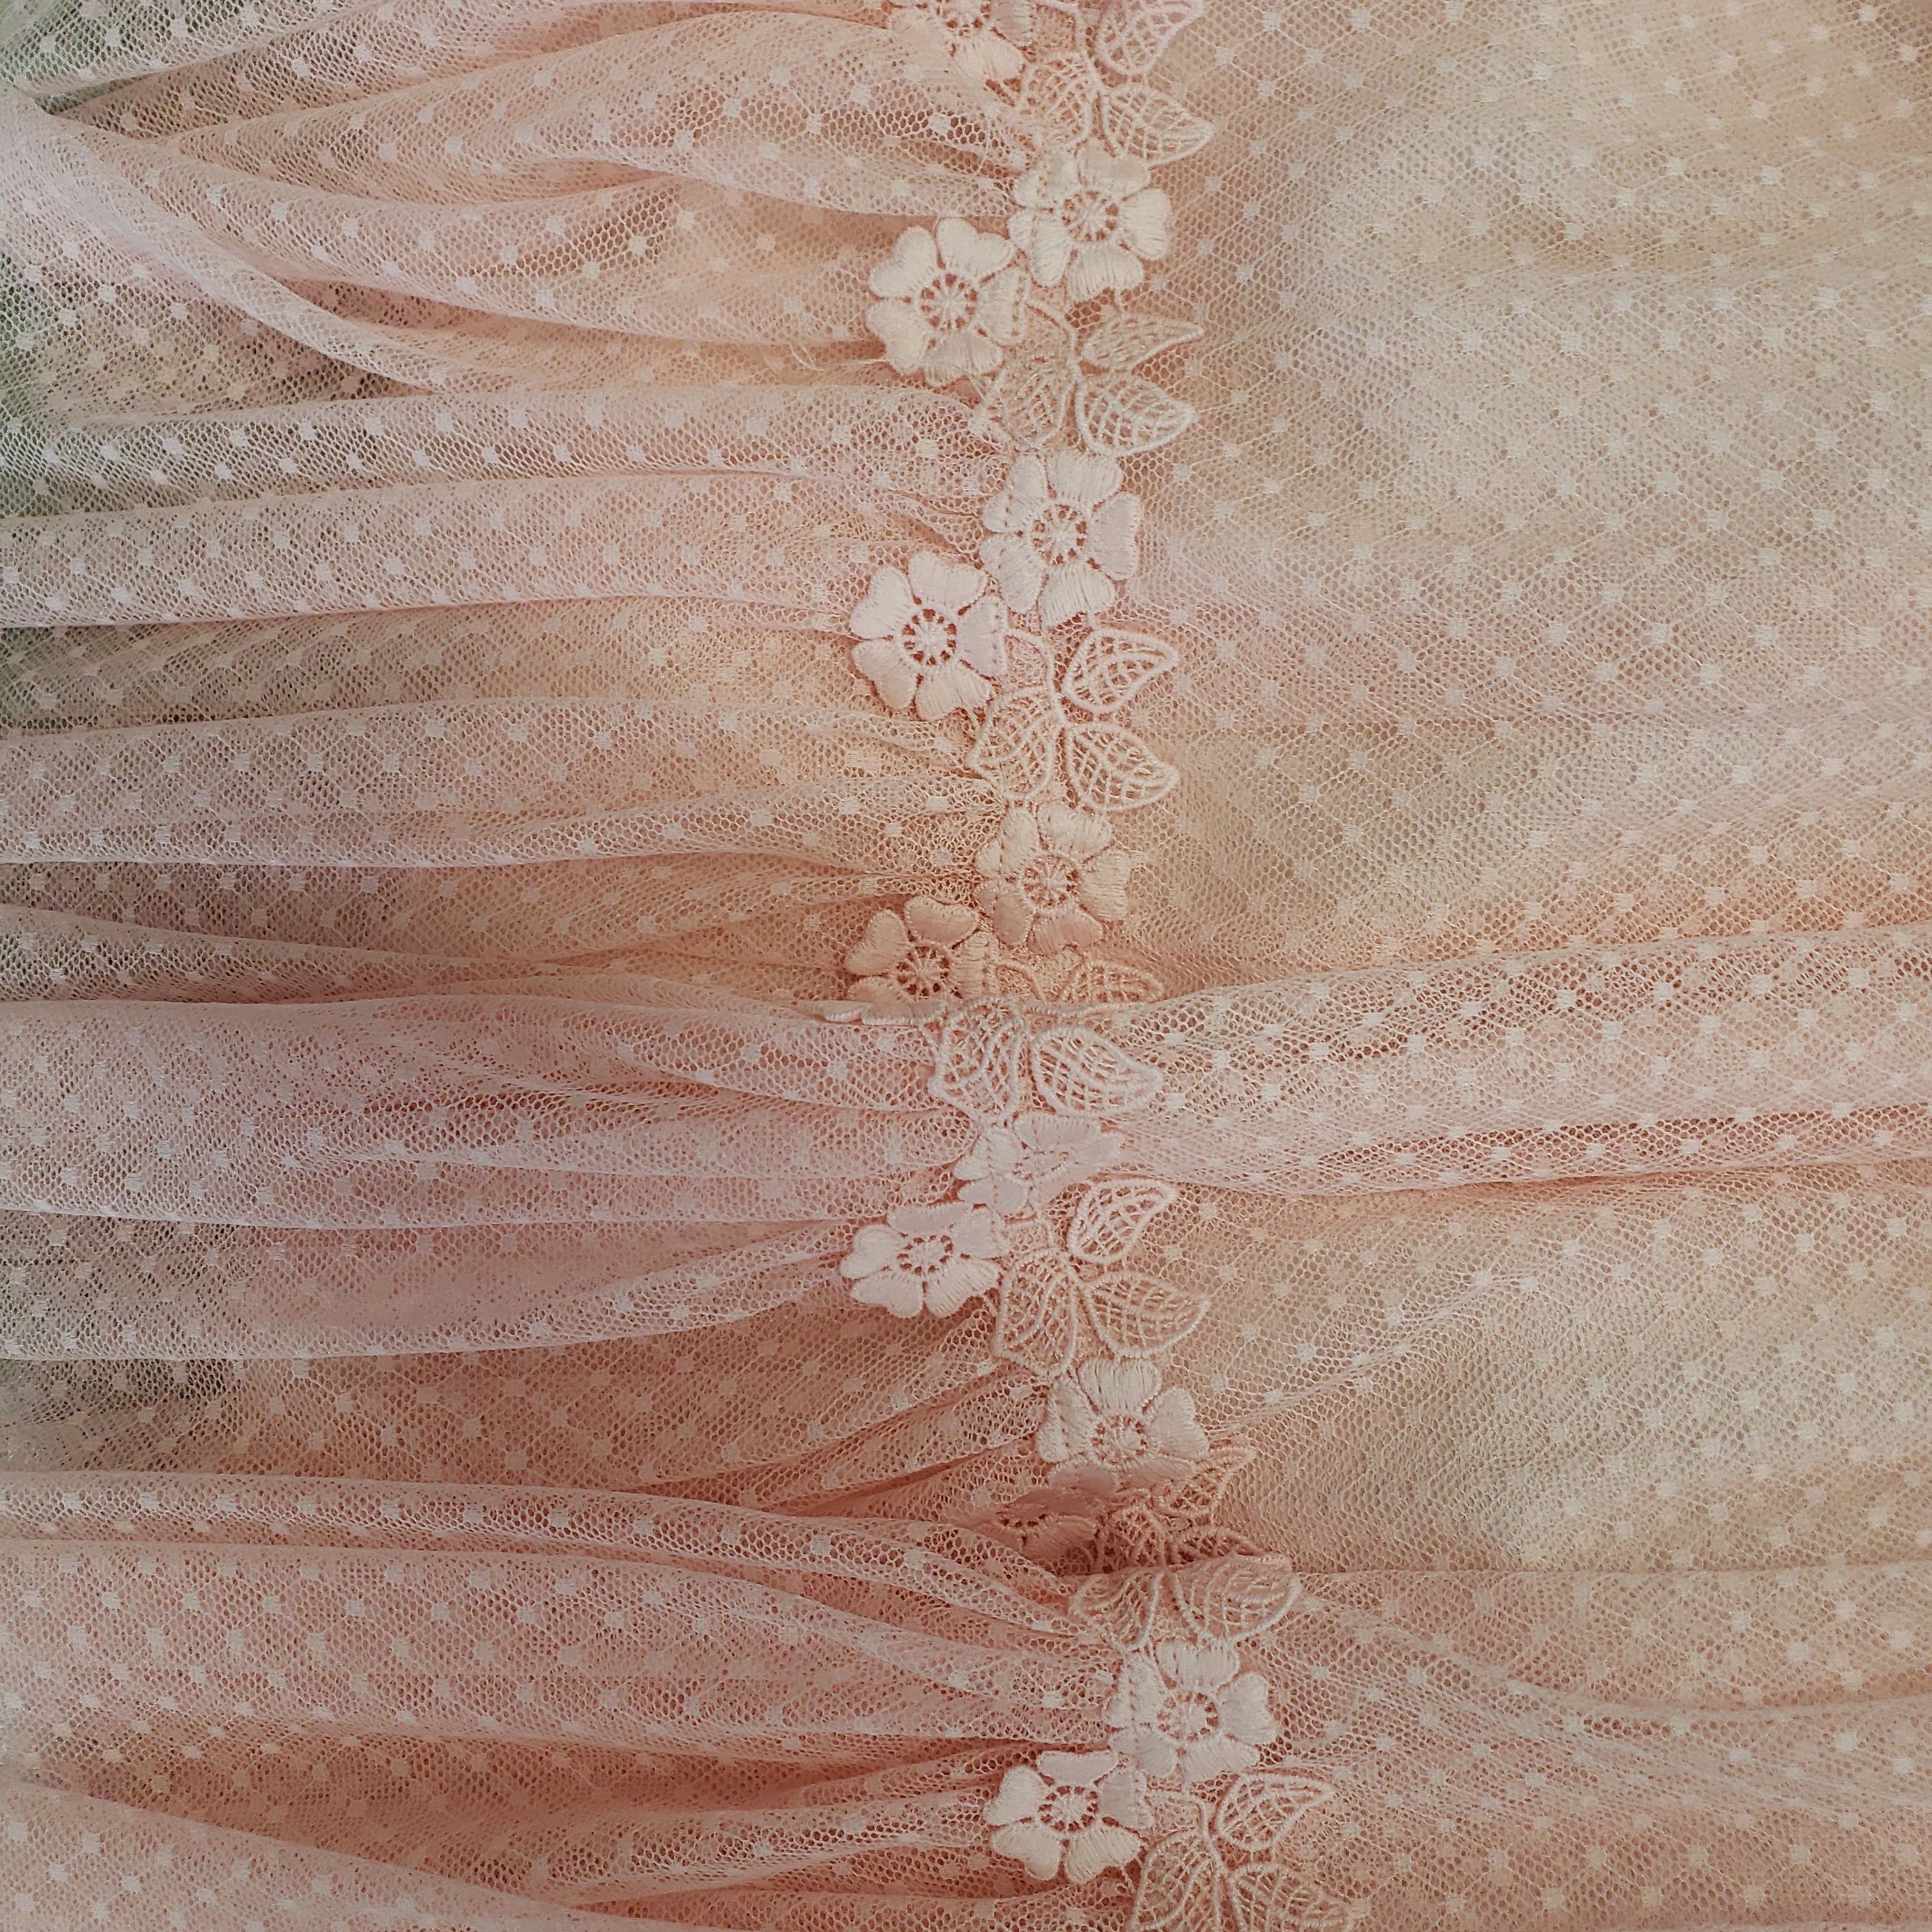 Peach lace dress by Abel & Lula